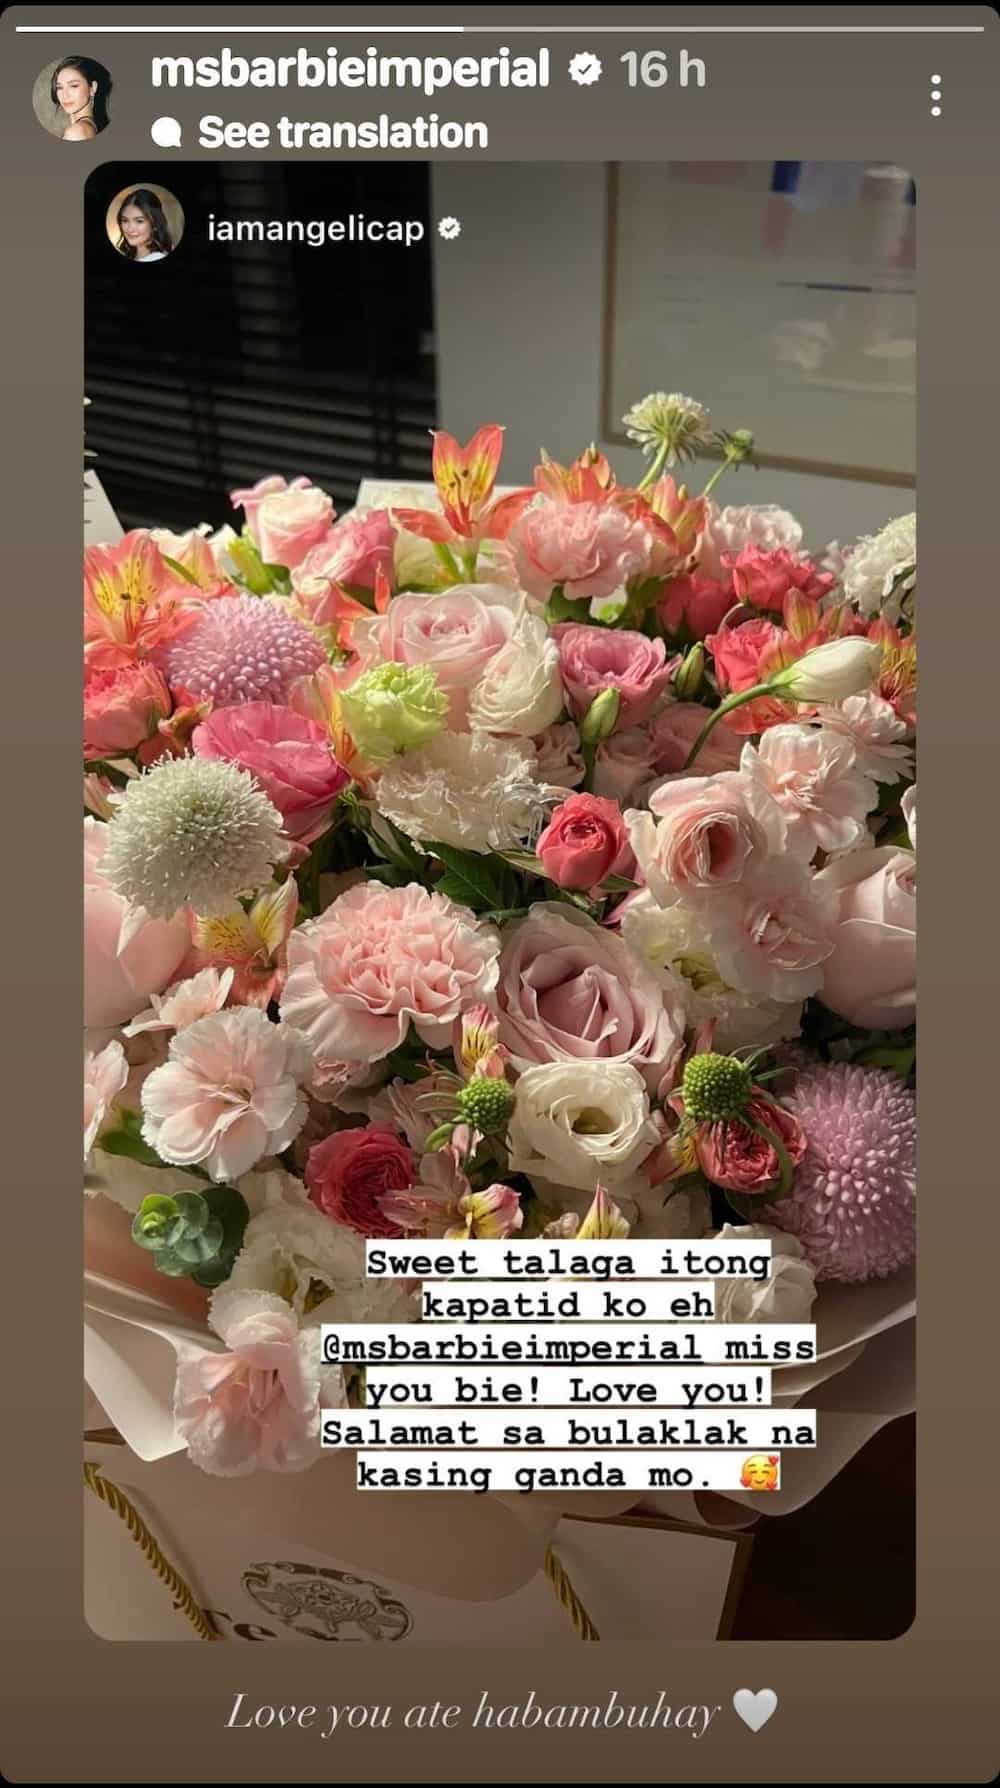 Angelica Panganiban, sweet na nagpasalamat kay Barbie Imperial na pinadalhan siya ng flowers